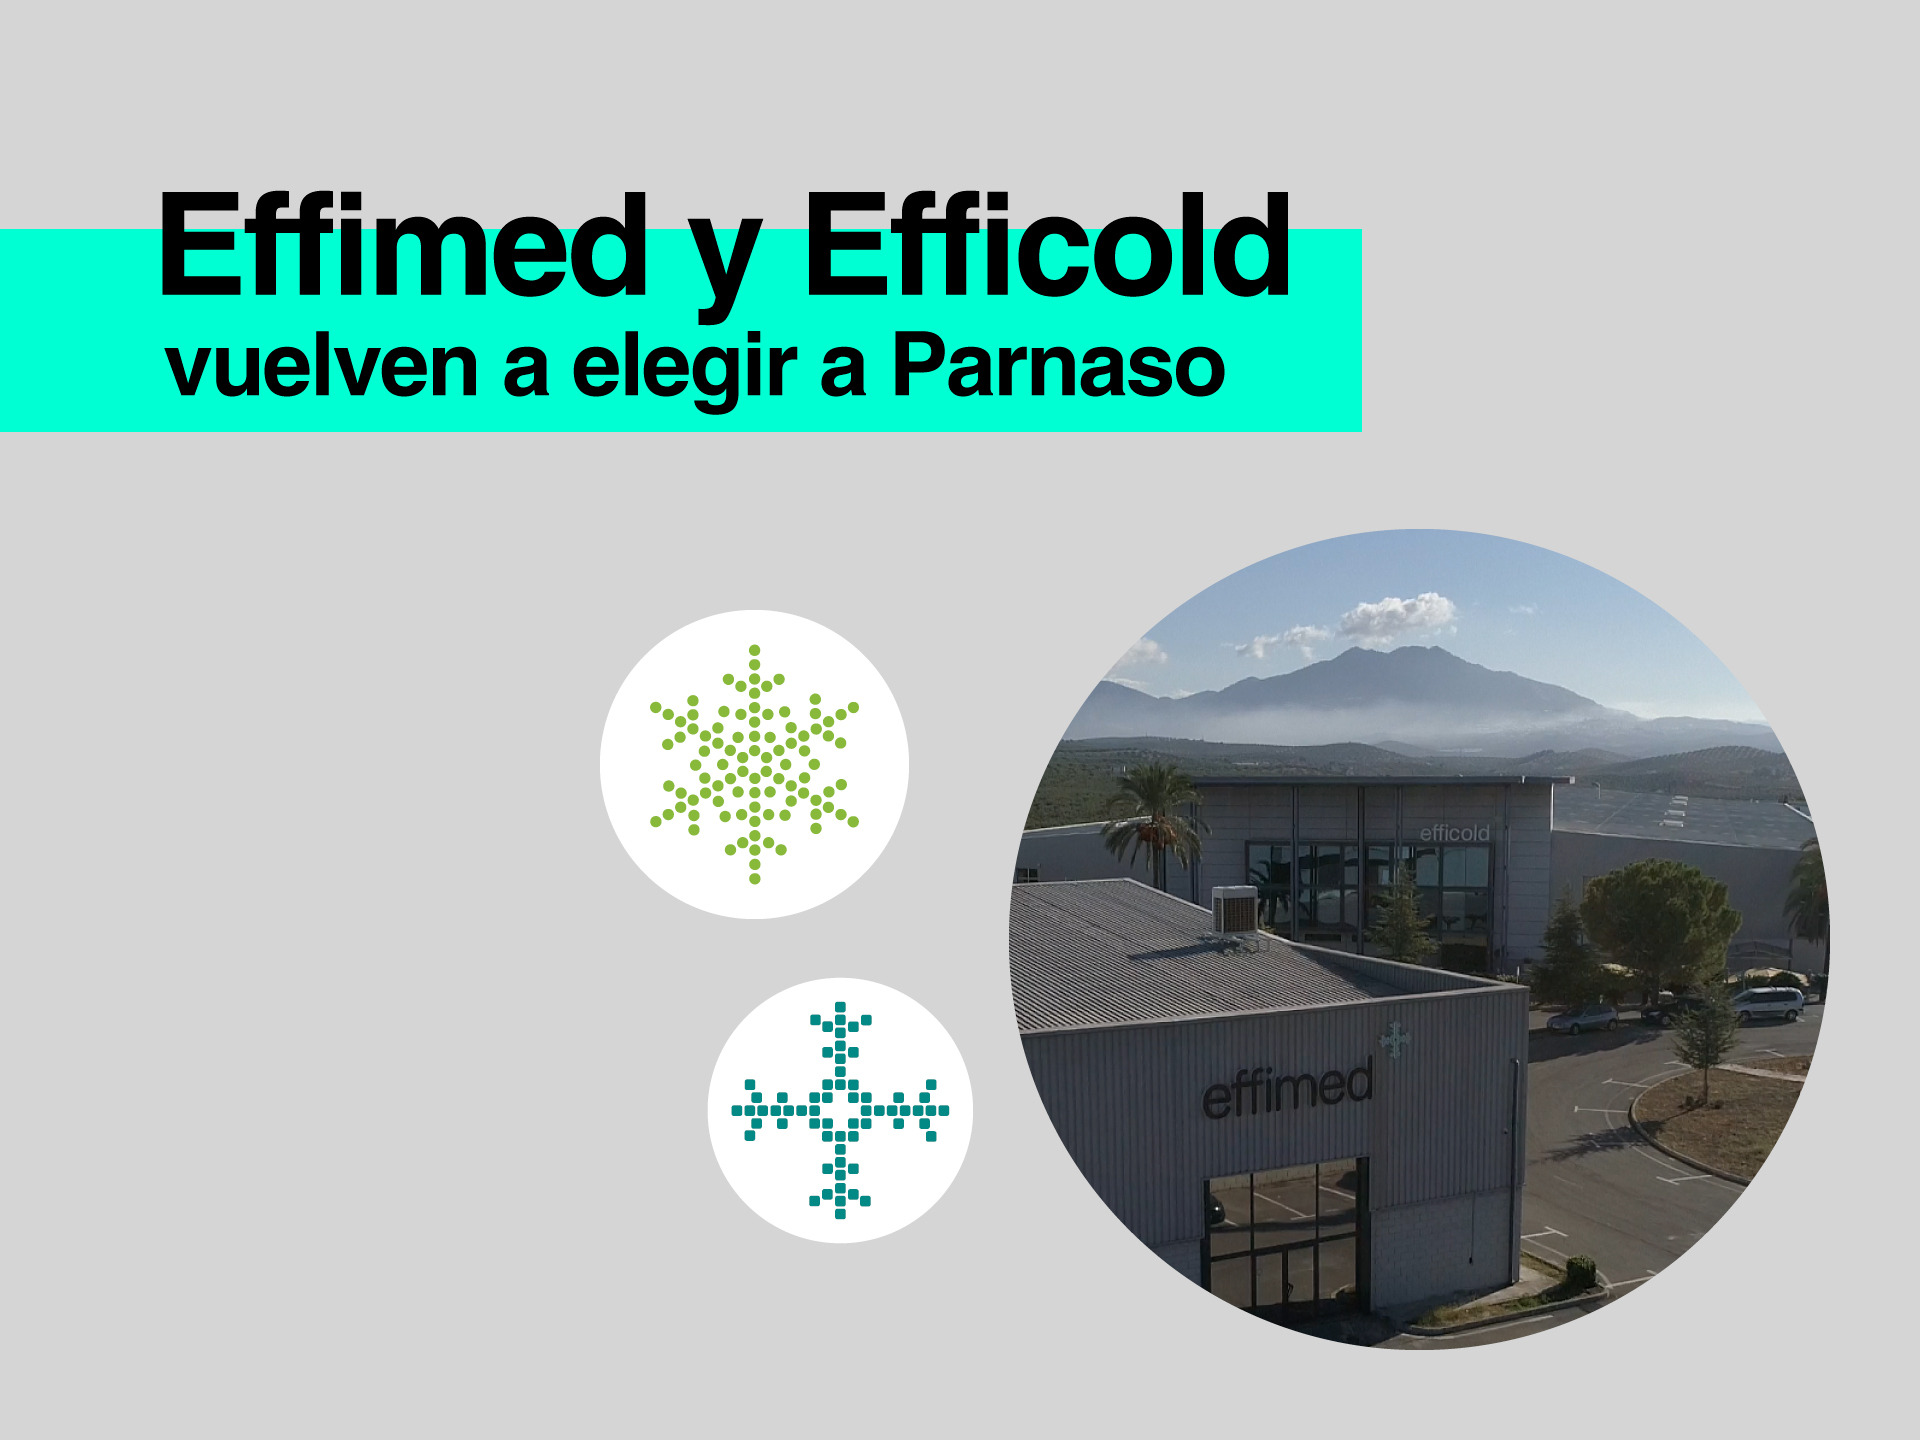 Effimed y Efficold vuelven a elegir a Parnaso para gestionar sus cuentas anuales - Parnaso